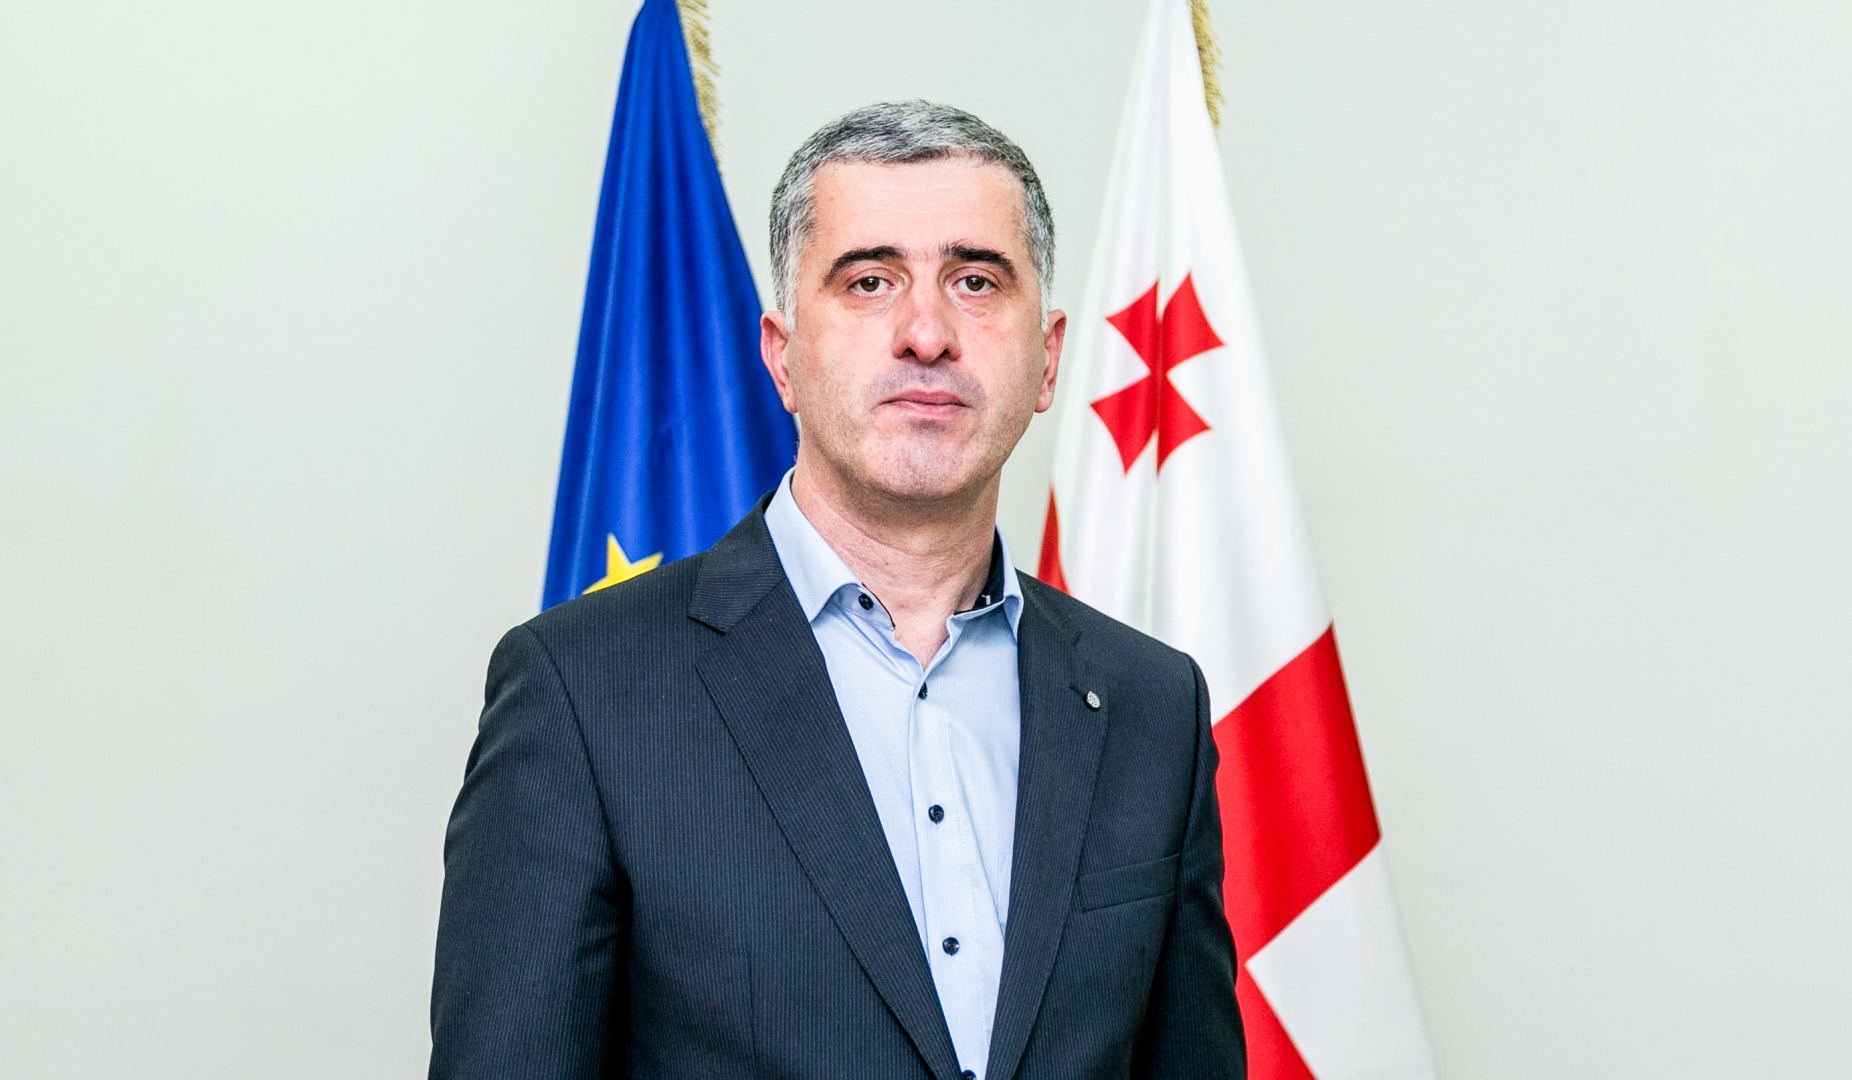 Министр сельского хозяйства Грузии планирует принять участие в мероприятии в Азербайджане